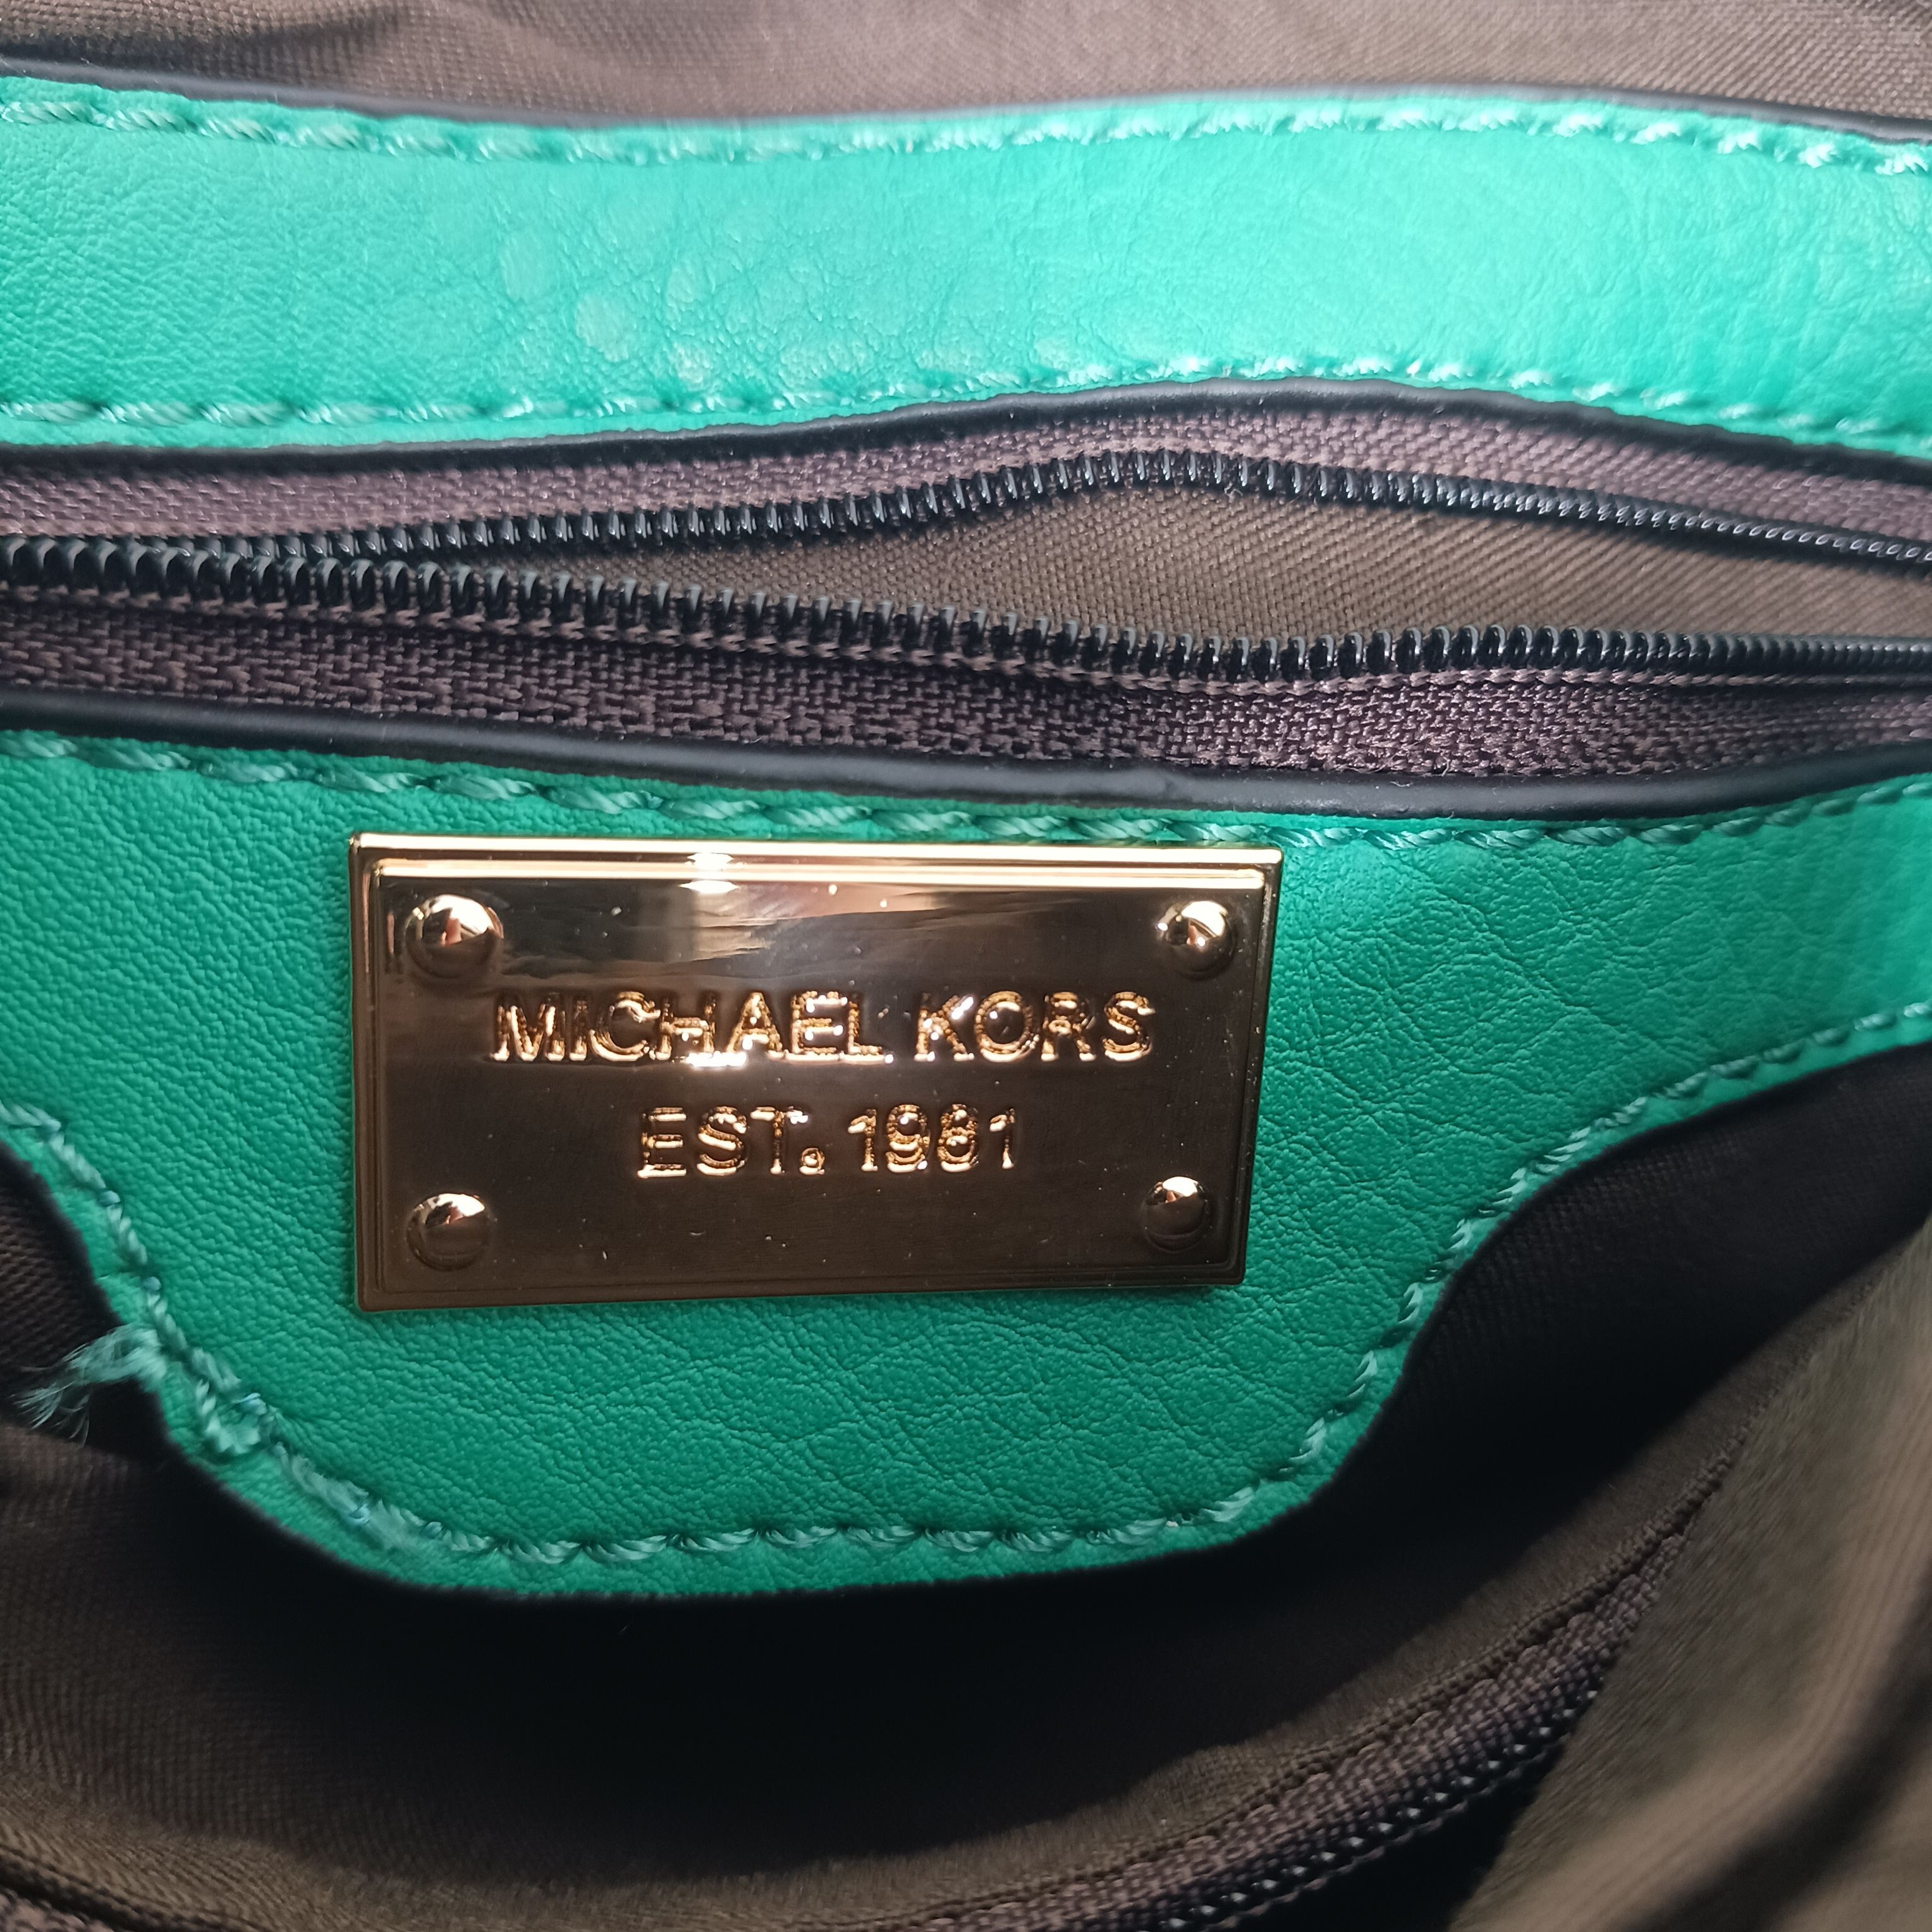 Michael Kors Color block XL chain signatures tote handbag wallet option  green | eBay